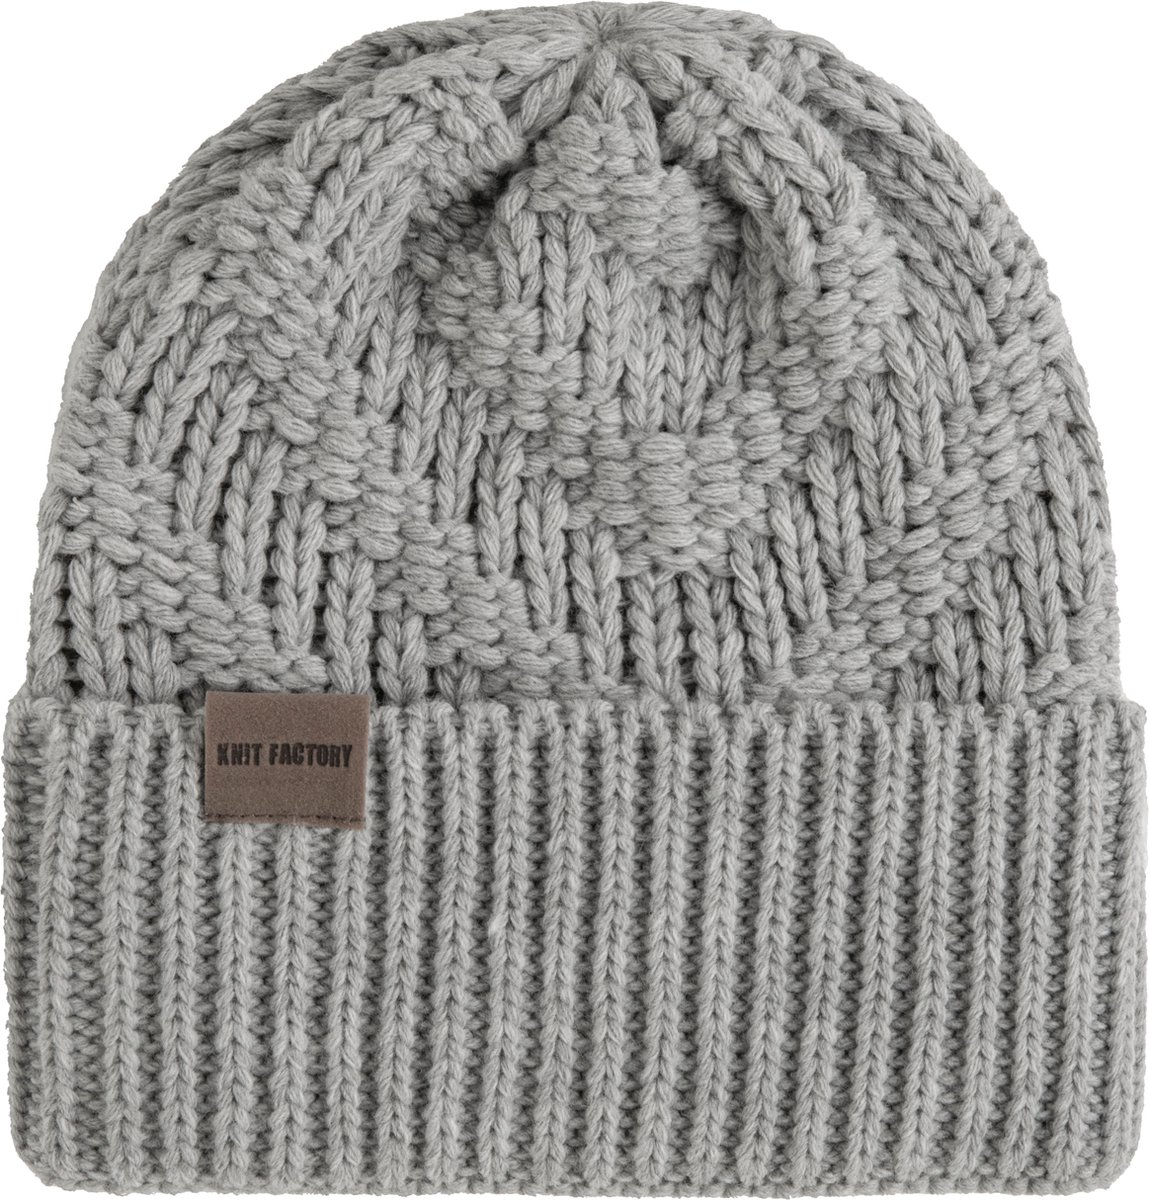 Knit Factory Sally Gebreide Muts Heren & Dames - Beanie hat - Iced Clay - Grofgebreid - Warme grijsbruine Wintermuts - Unisex - One Size